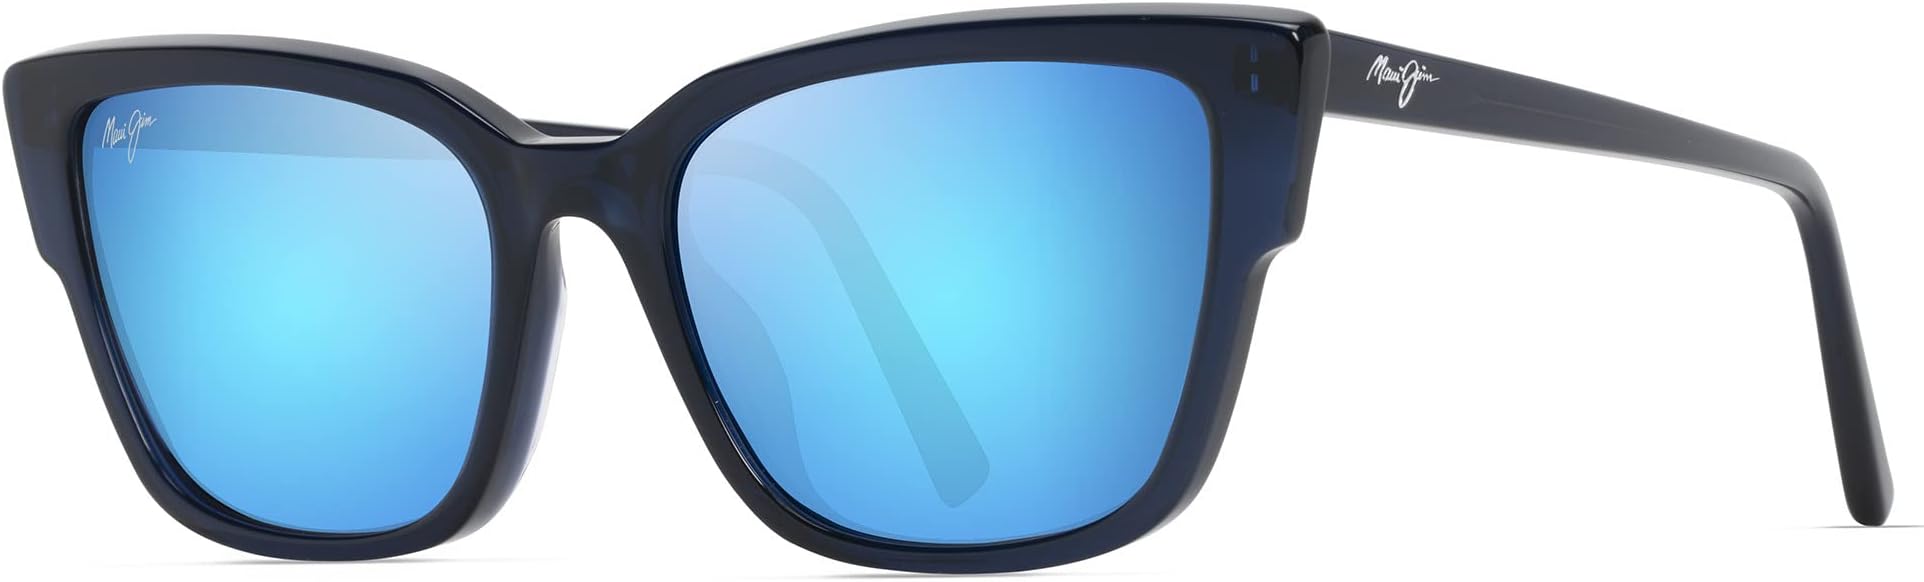 Солнцезащитные очки Kou Maui Jim, цвет Navy Blue/Blue Hawaii солнцезащитные очки one way maui jim цвет dark navy stripe blue hawaii